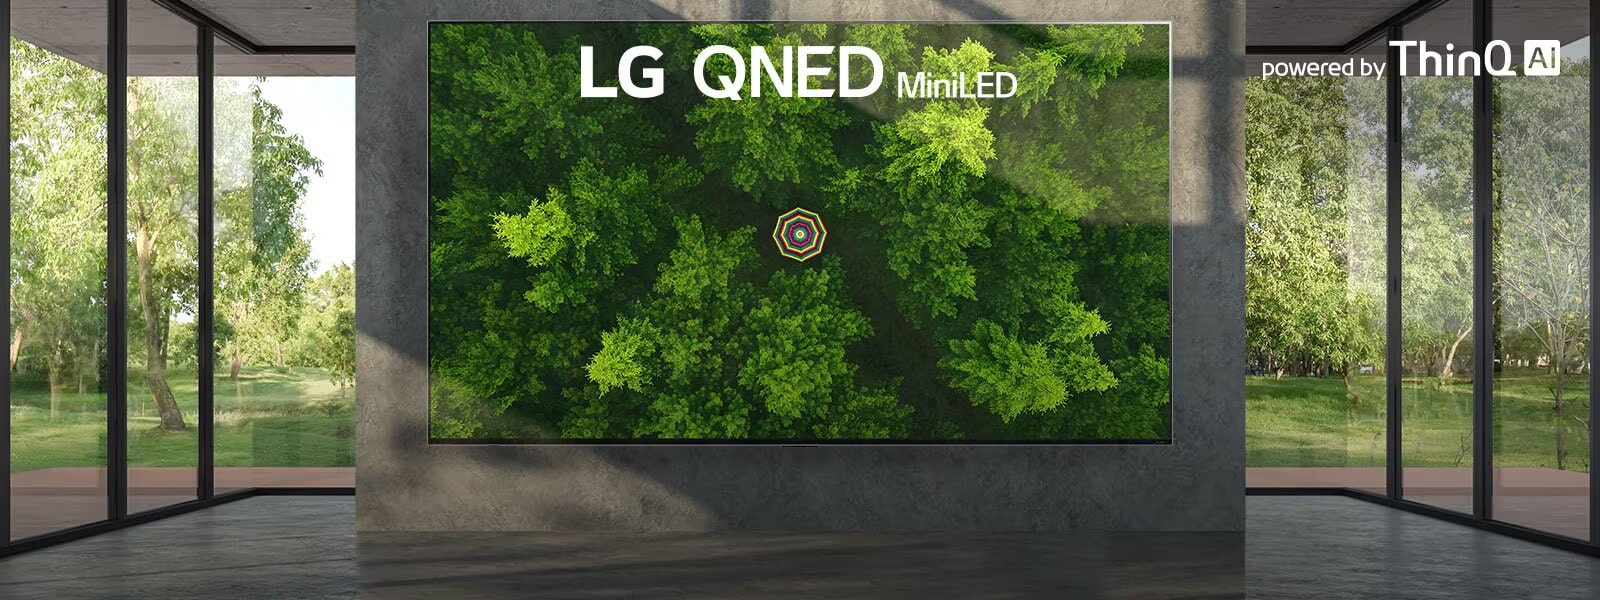 Un televisor LG QNED MiniLED con pantalla ultra grande montado contra una pared con ventanas del piso al techo a cada lado. La pantalla muestra una vista de pájaro de un bosque verde y frondoso.